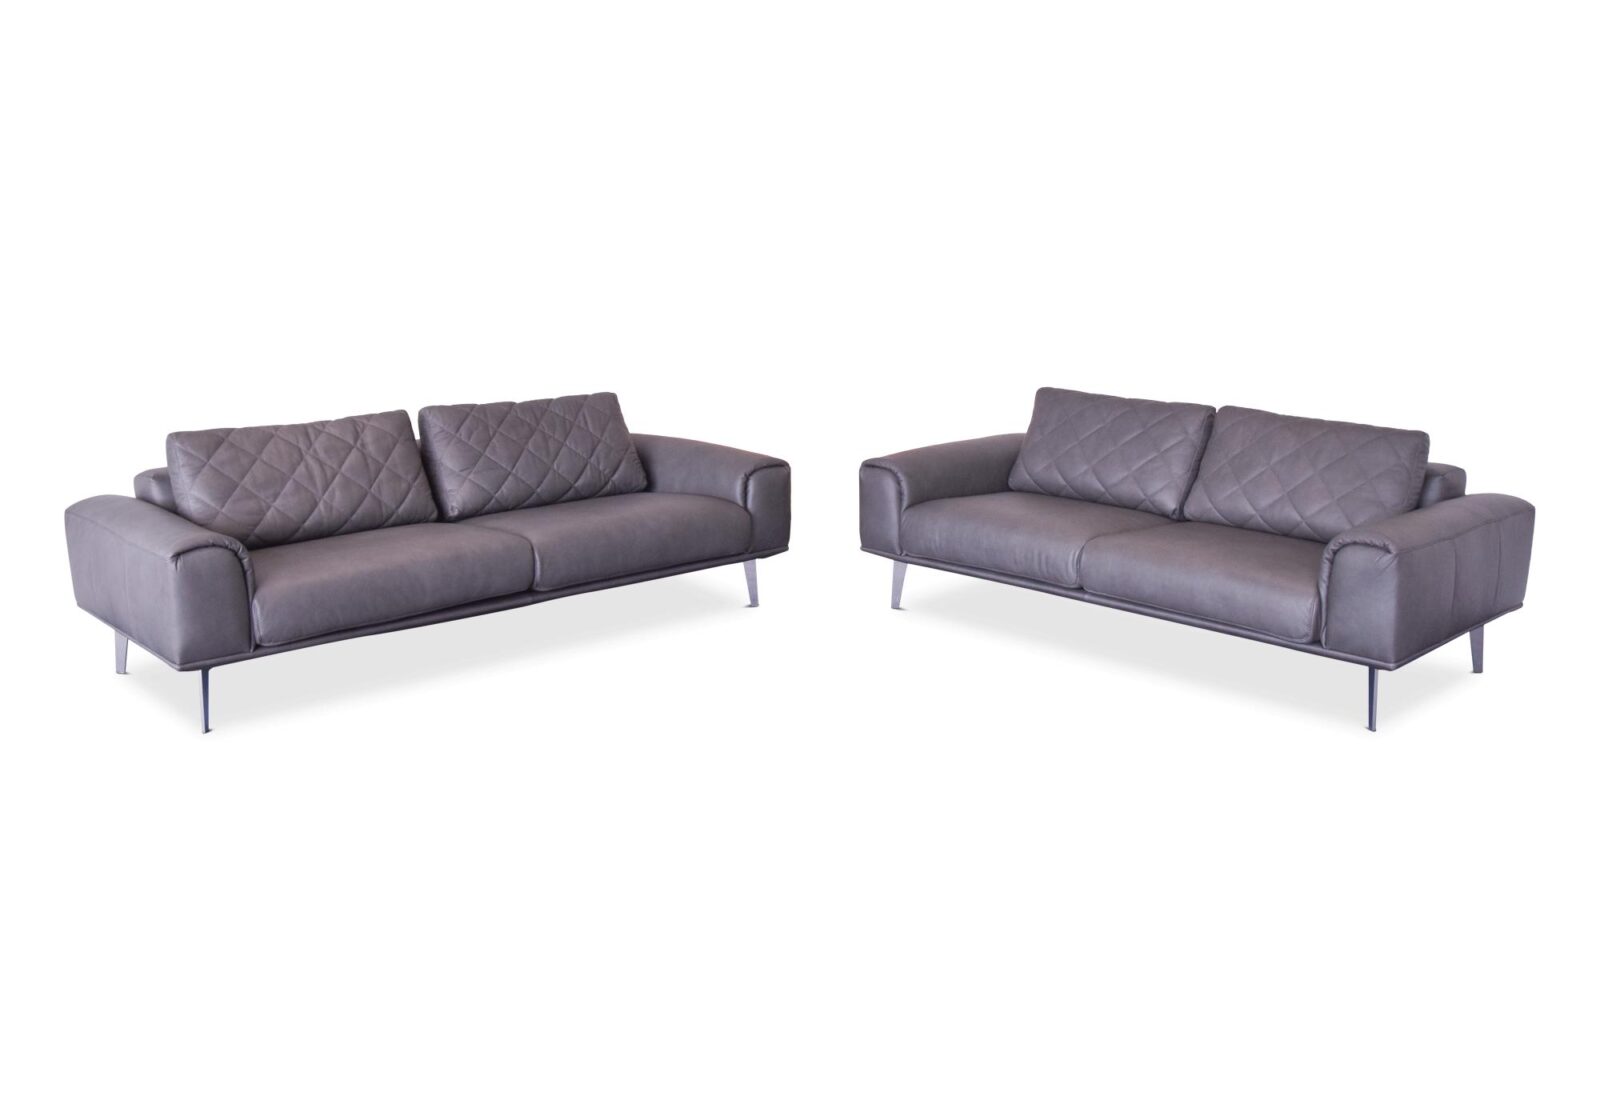 Polstergruppe Kiko mit 2er und 3er Sofa. Bezug: Leder. Farbe: Anthrazite. Erhältlich bei Möbel Gallati.